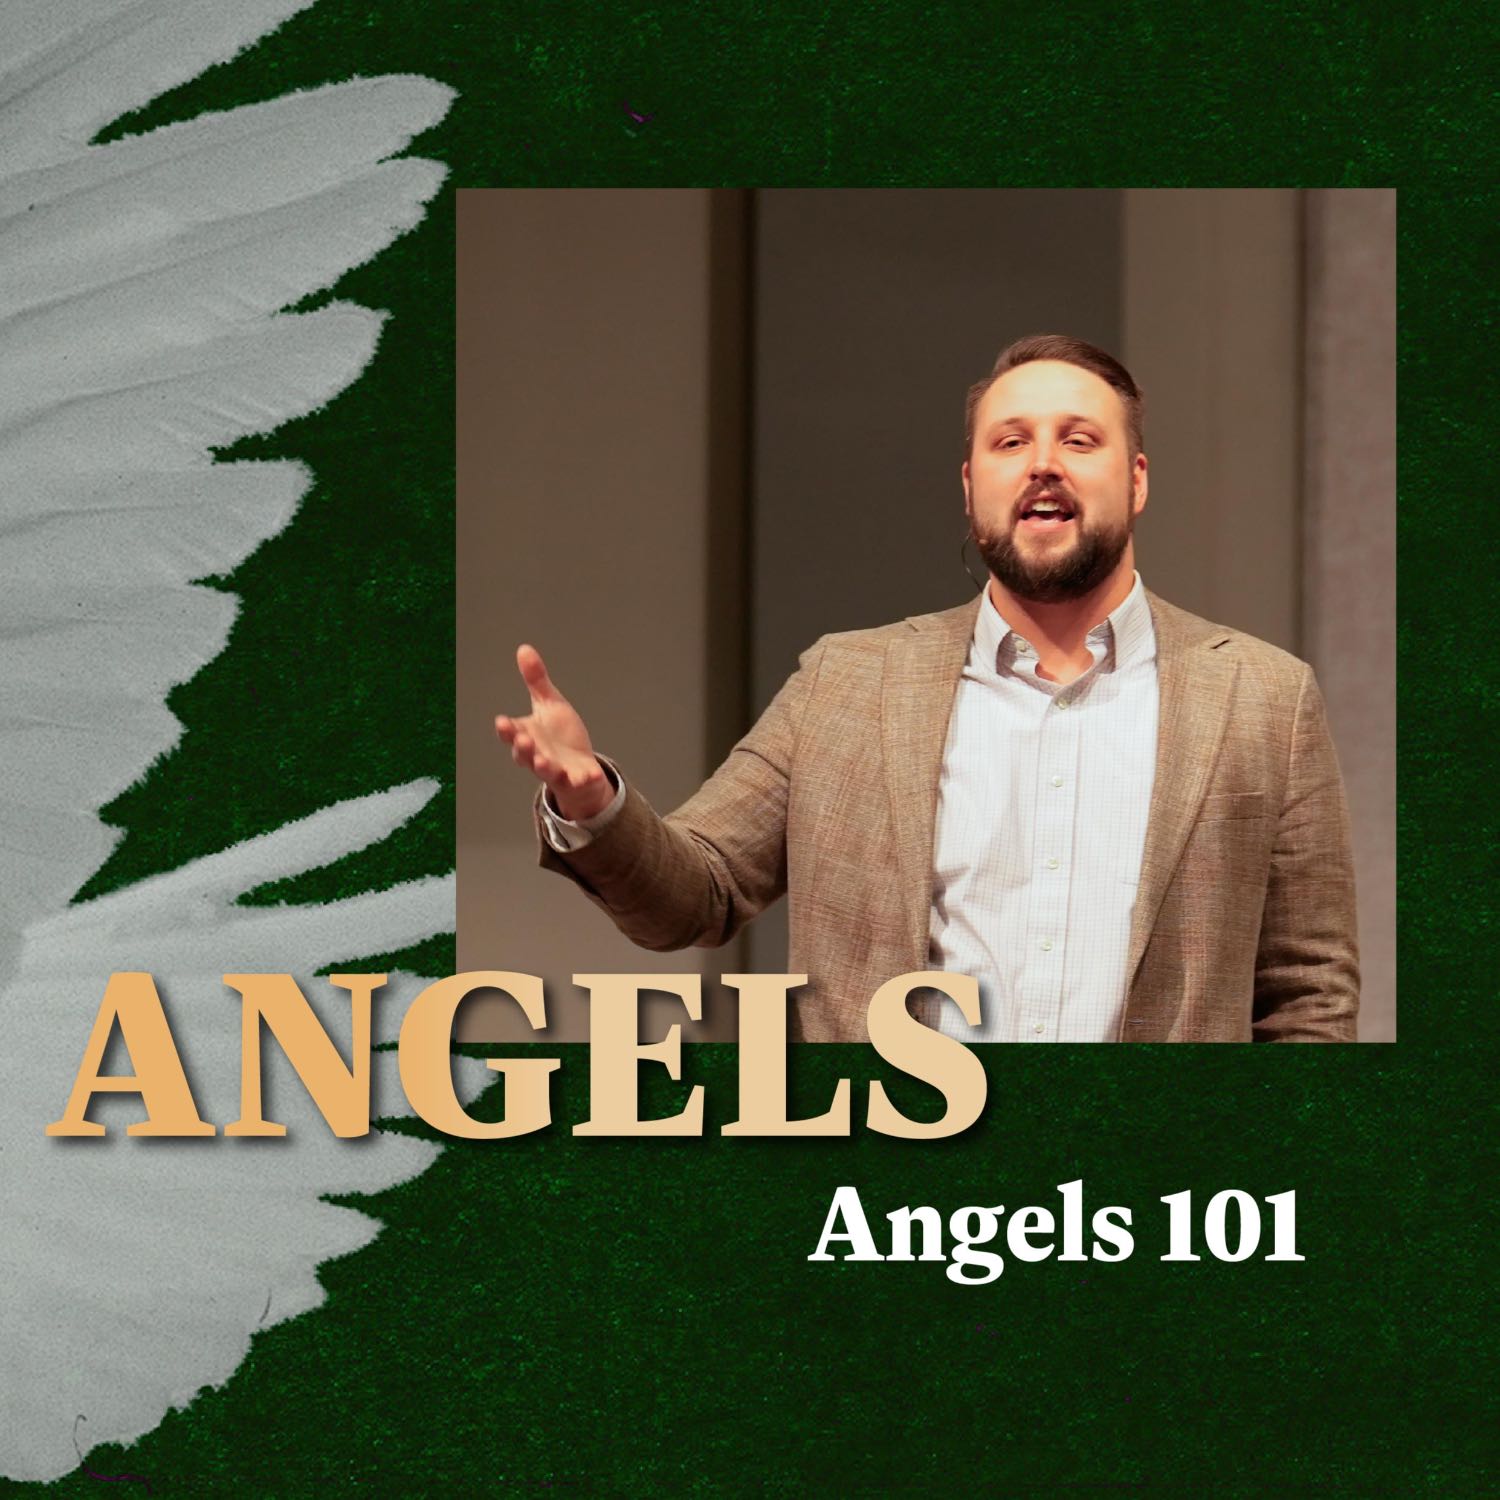 Angels 101 | Angels